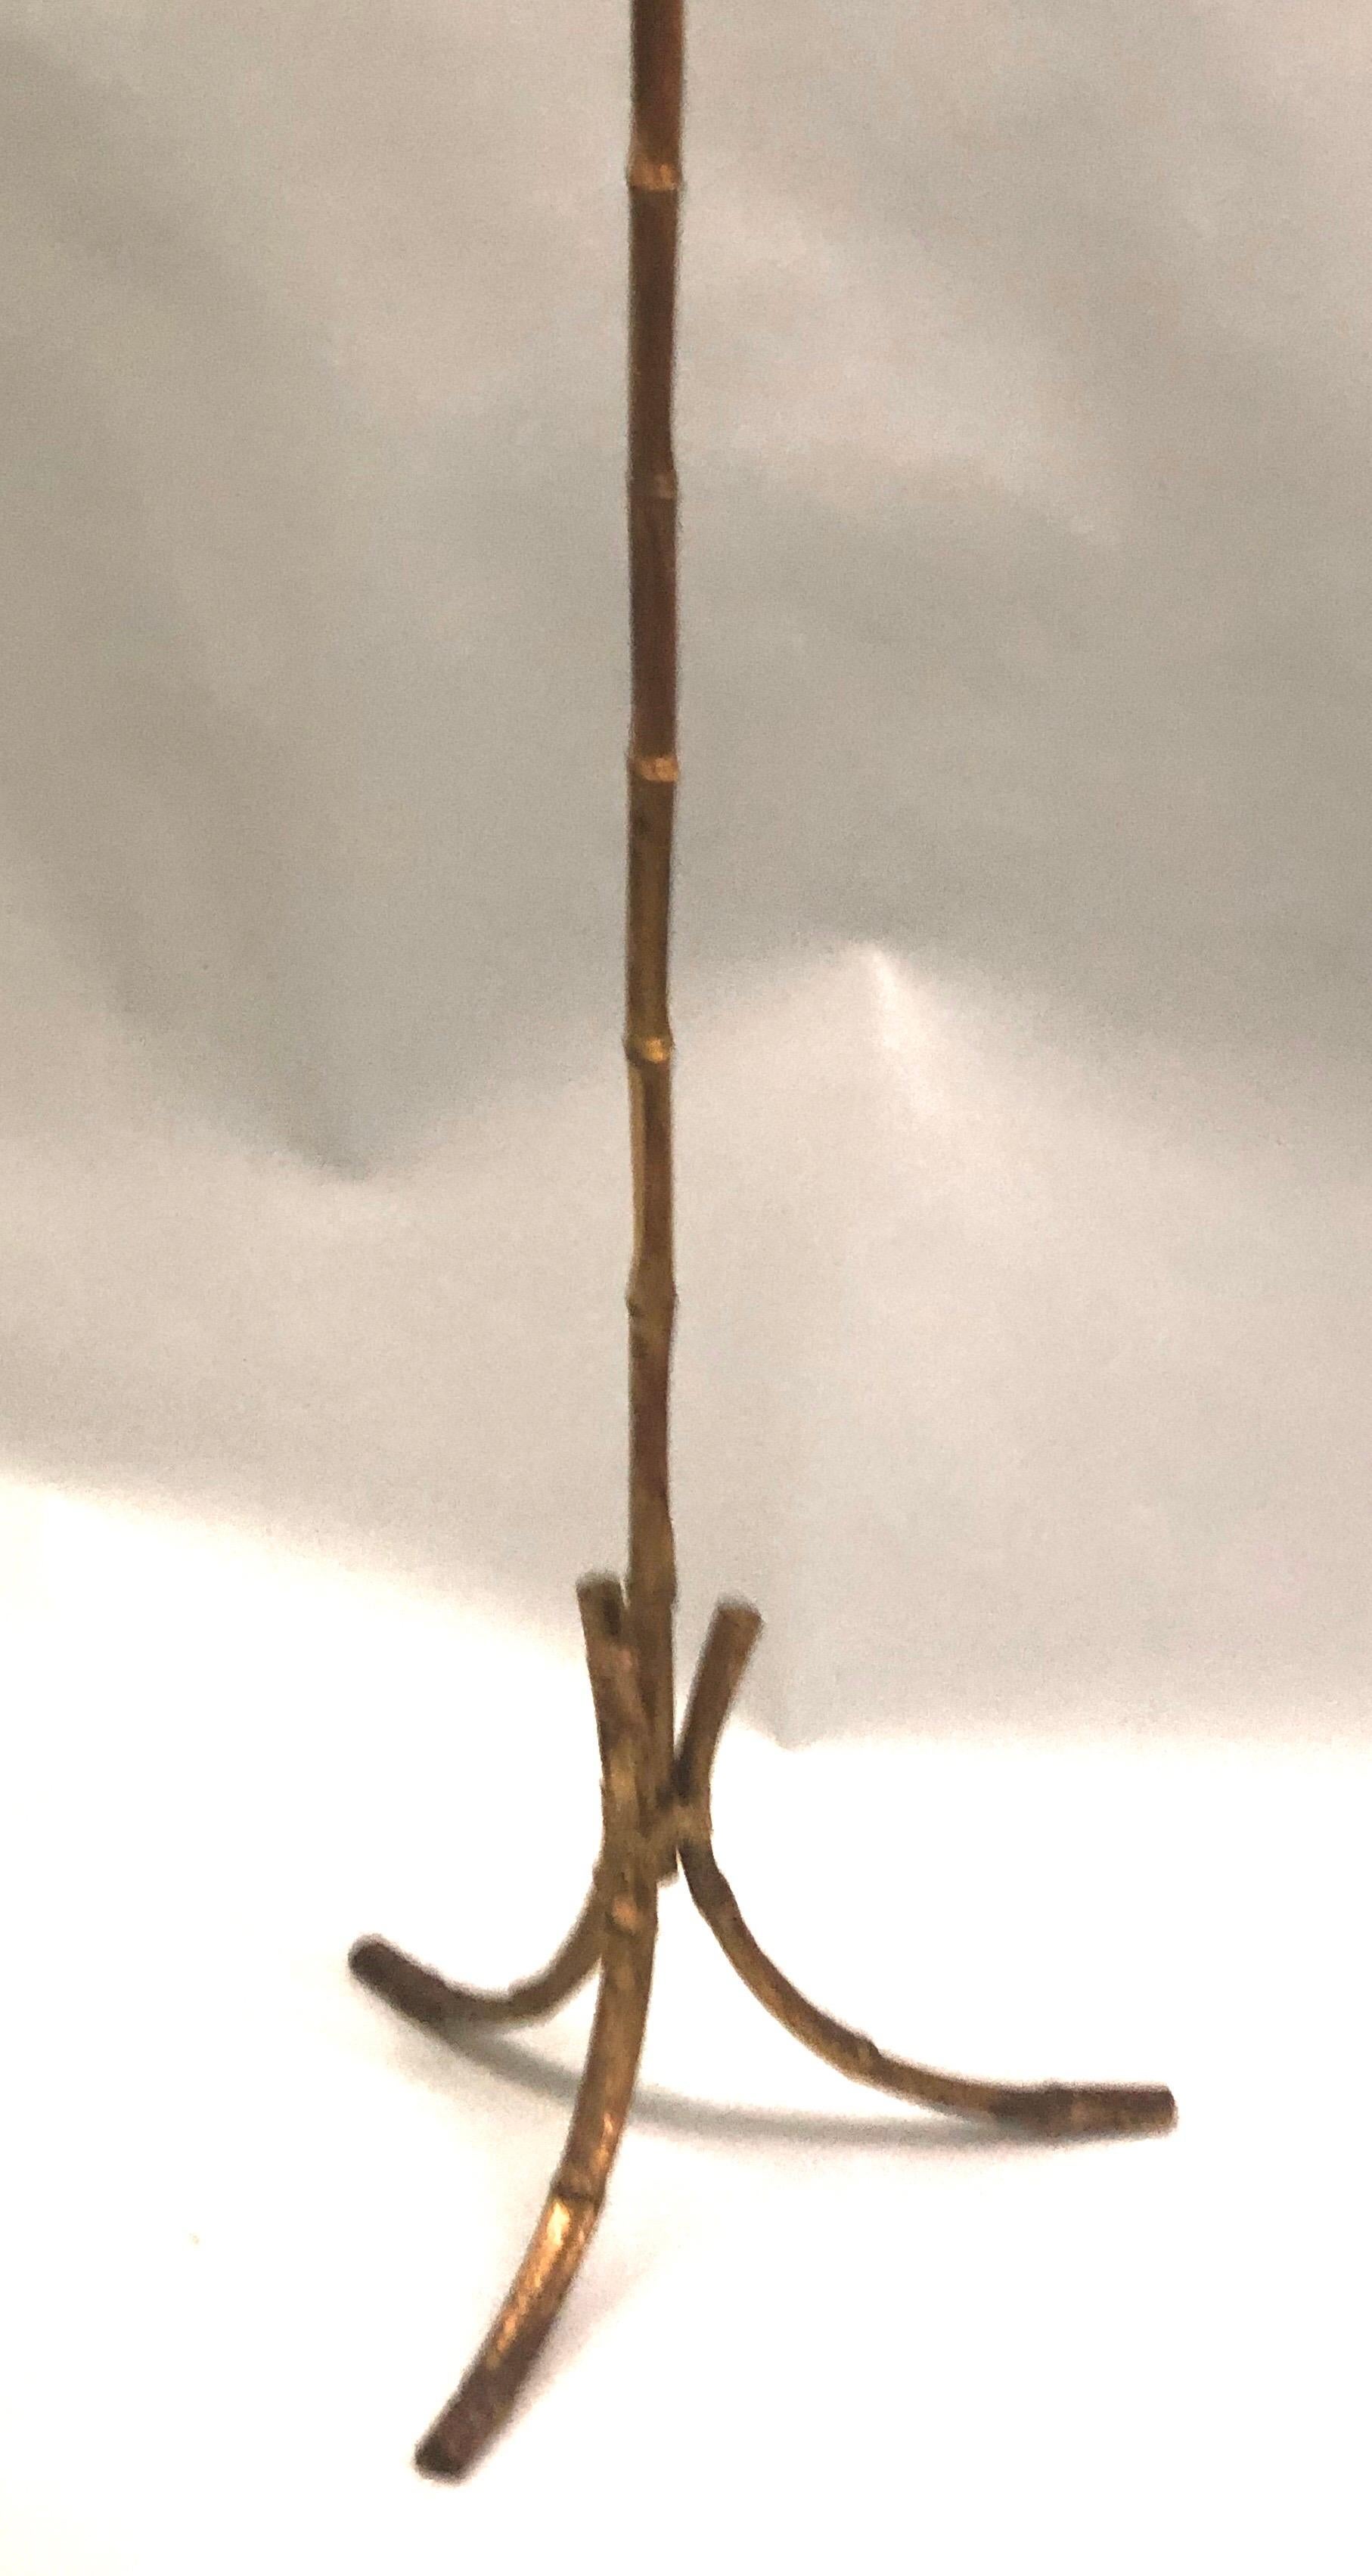 Elégante lampe sur pied française du milieu du siècle en fer doré faux bambou par la Maison Baguès dans l'esprit néoclassique moderne.

Le fer a été délicatement martelé pour donner l'impression d'un bambou. Hauteur réglable.

L'abat-jour n'est